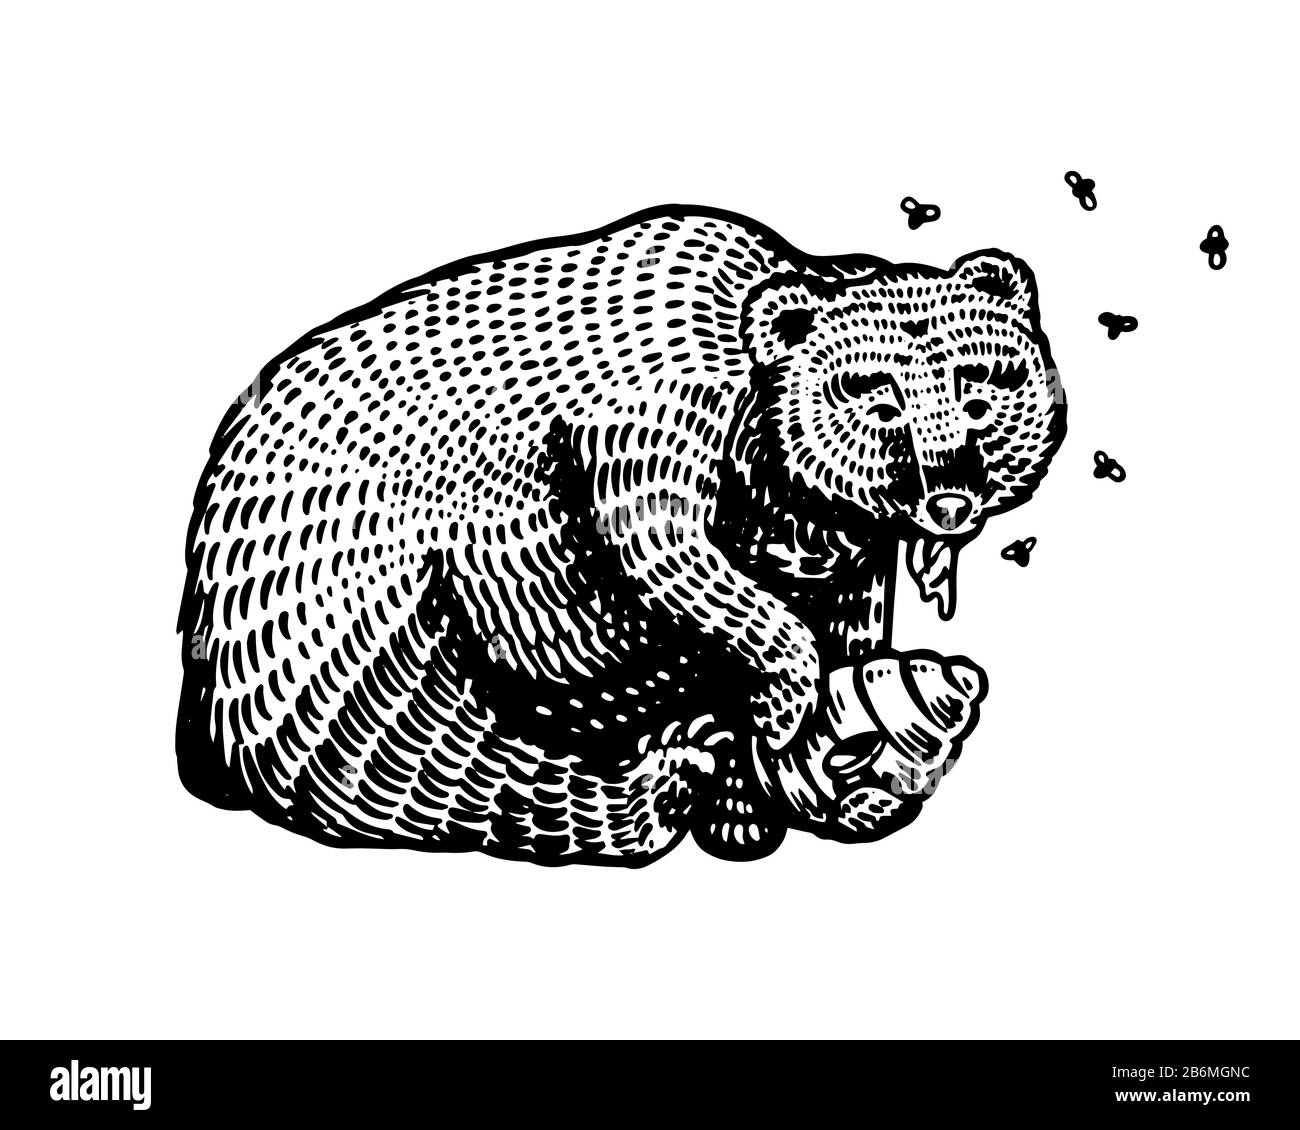 L'ours brun grizzli mange du miel. Dans un animal sauvage dans la paw une ruche avec des abeilles. Vue latérale. Ancienne esquisse gravée à la main pour T-shirt, tatouage ou étiquette Illustration de Vecteur